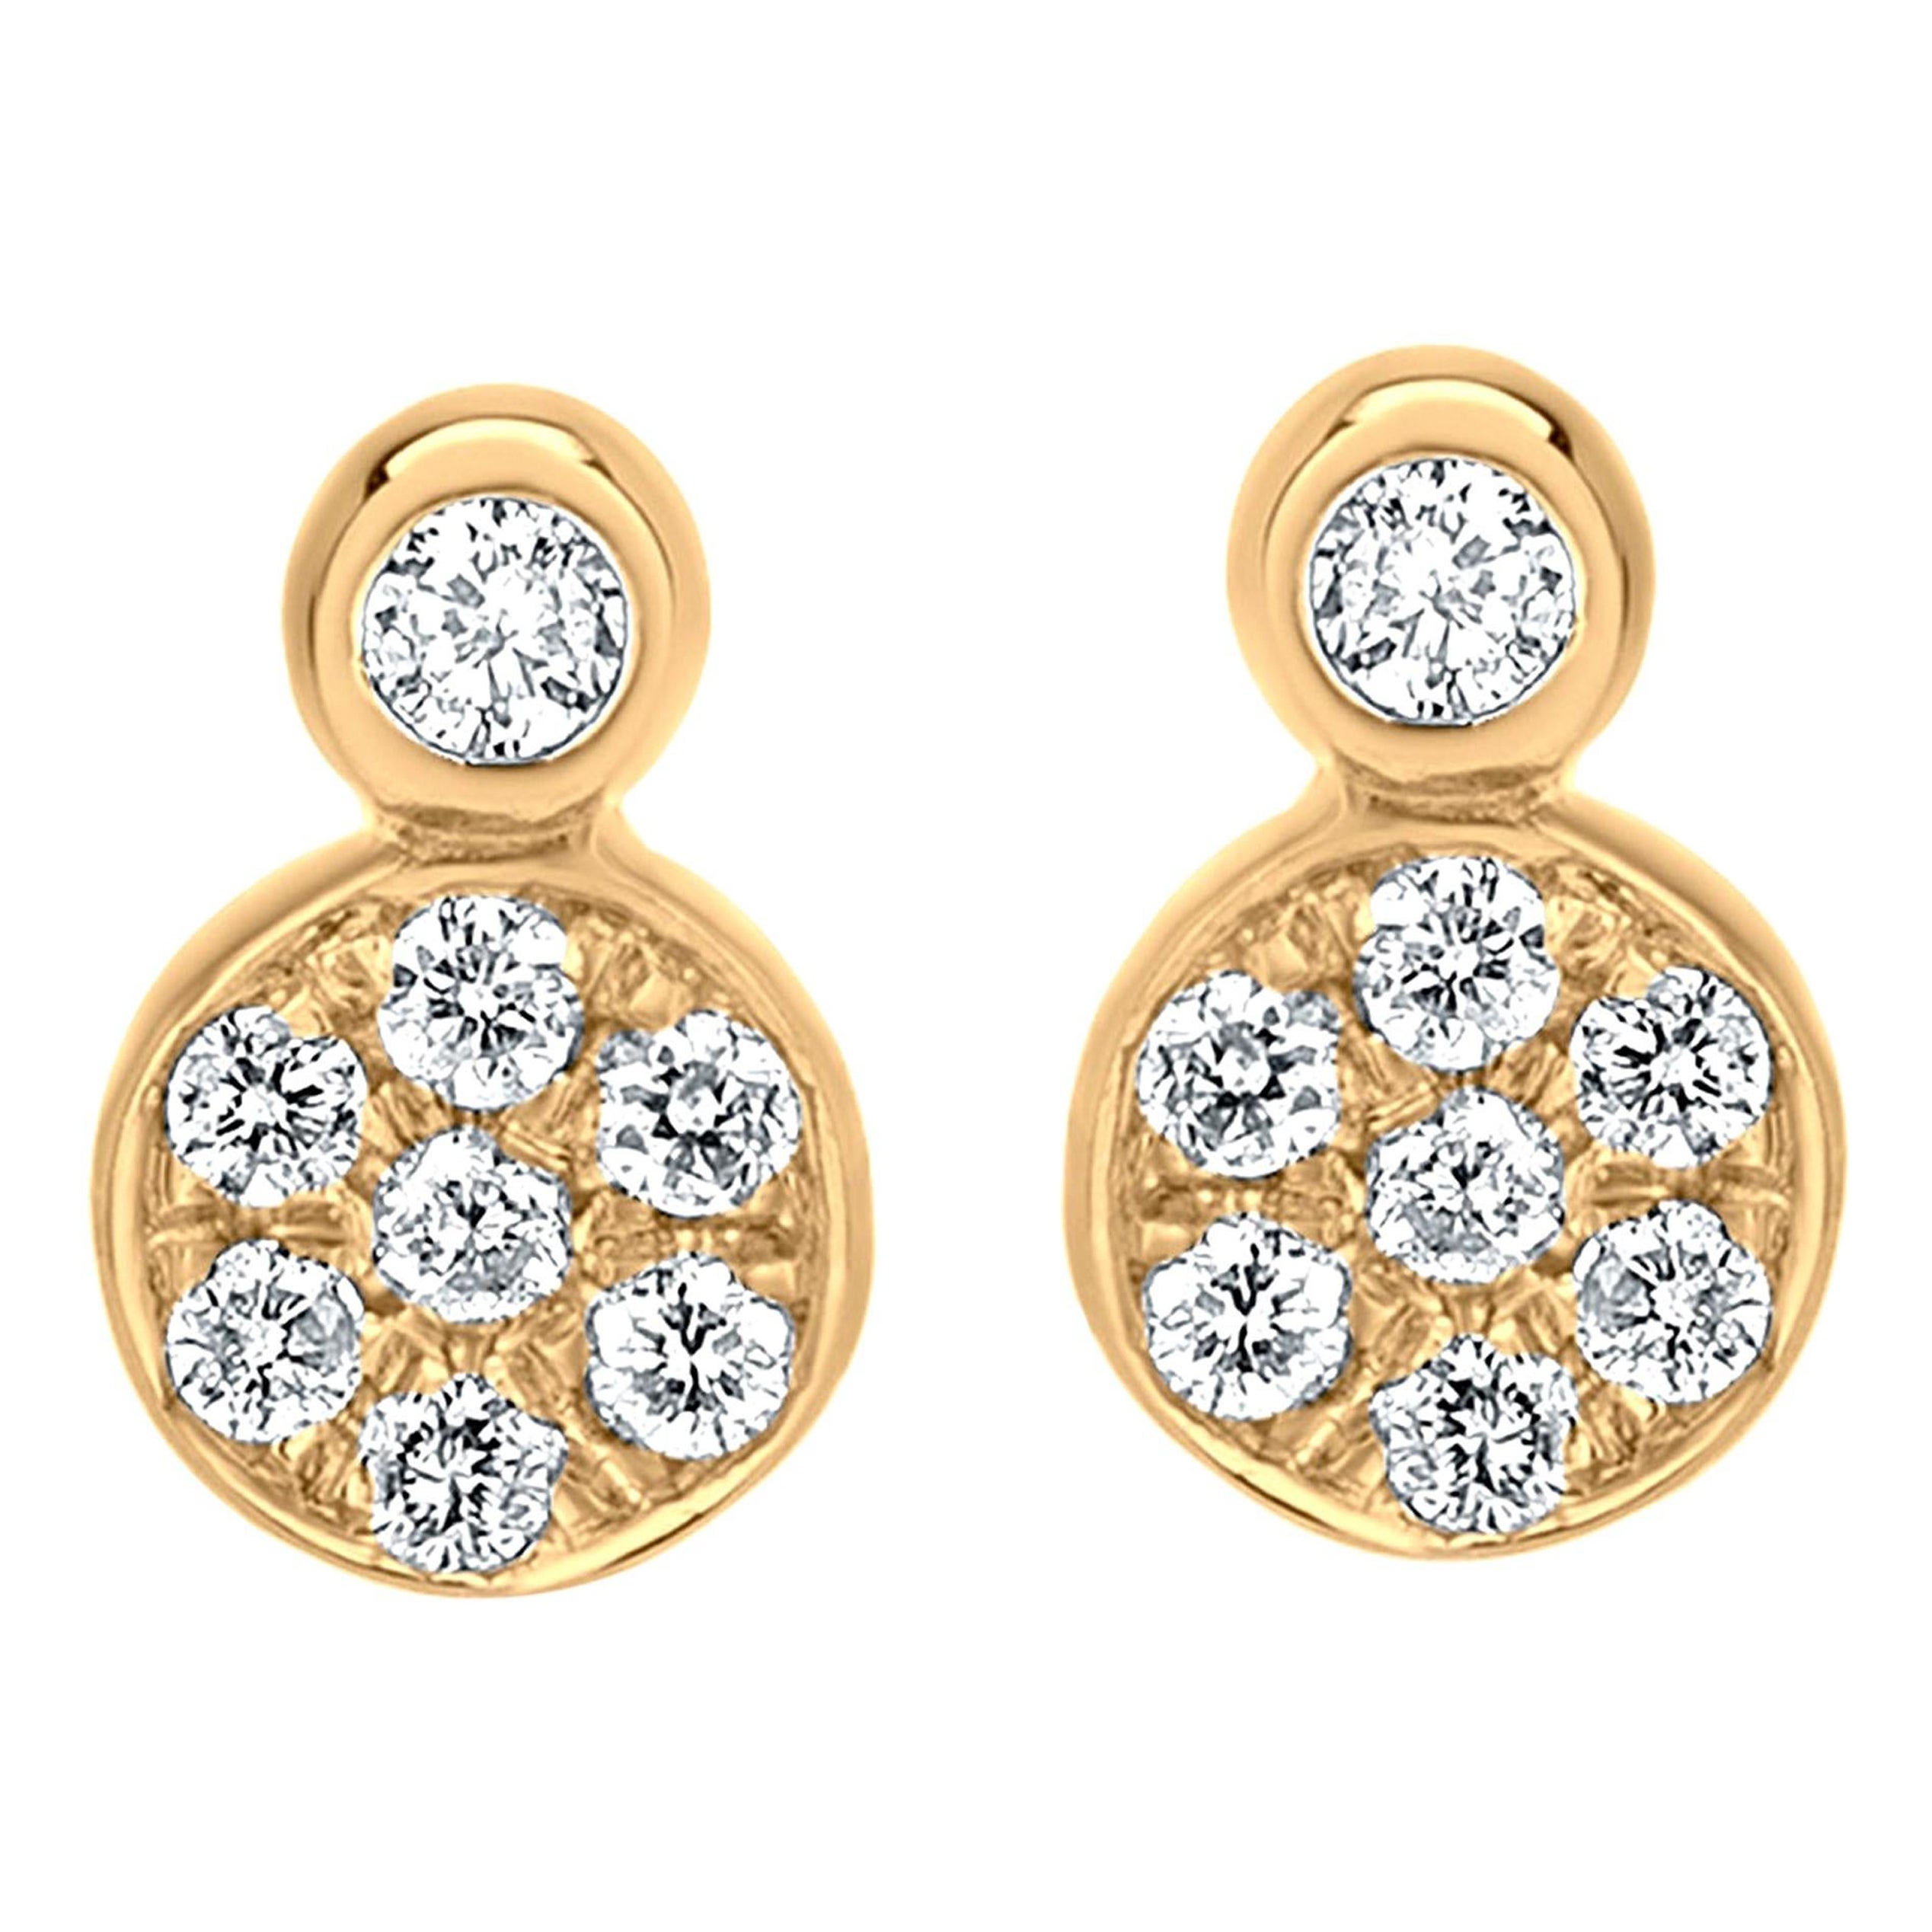 Luxle Diamond Cluster Stud Earrings in 18k Yellow Gold